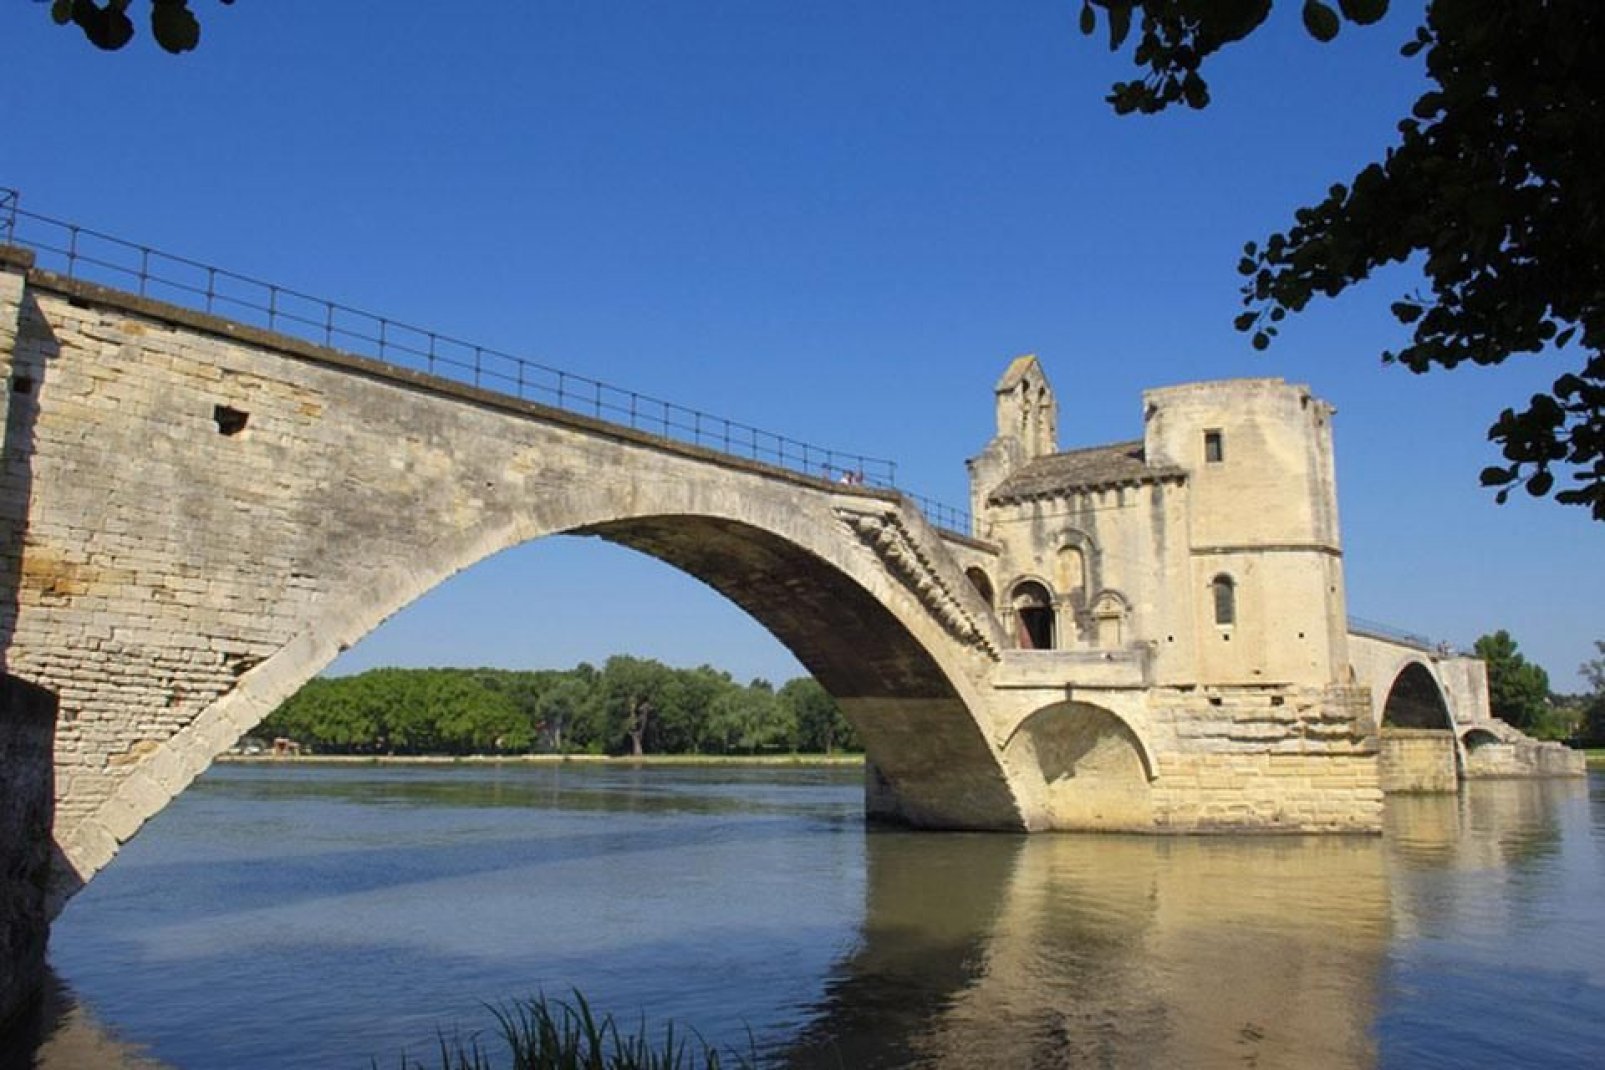 Die berühmte Brücke von Avignon (nach dem gleichnamigen Lied) ist in Wirklichkeit die 1185 fertig gestellte Pont Saint-Bénézet (Brücke des heiligen Bénézet).